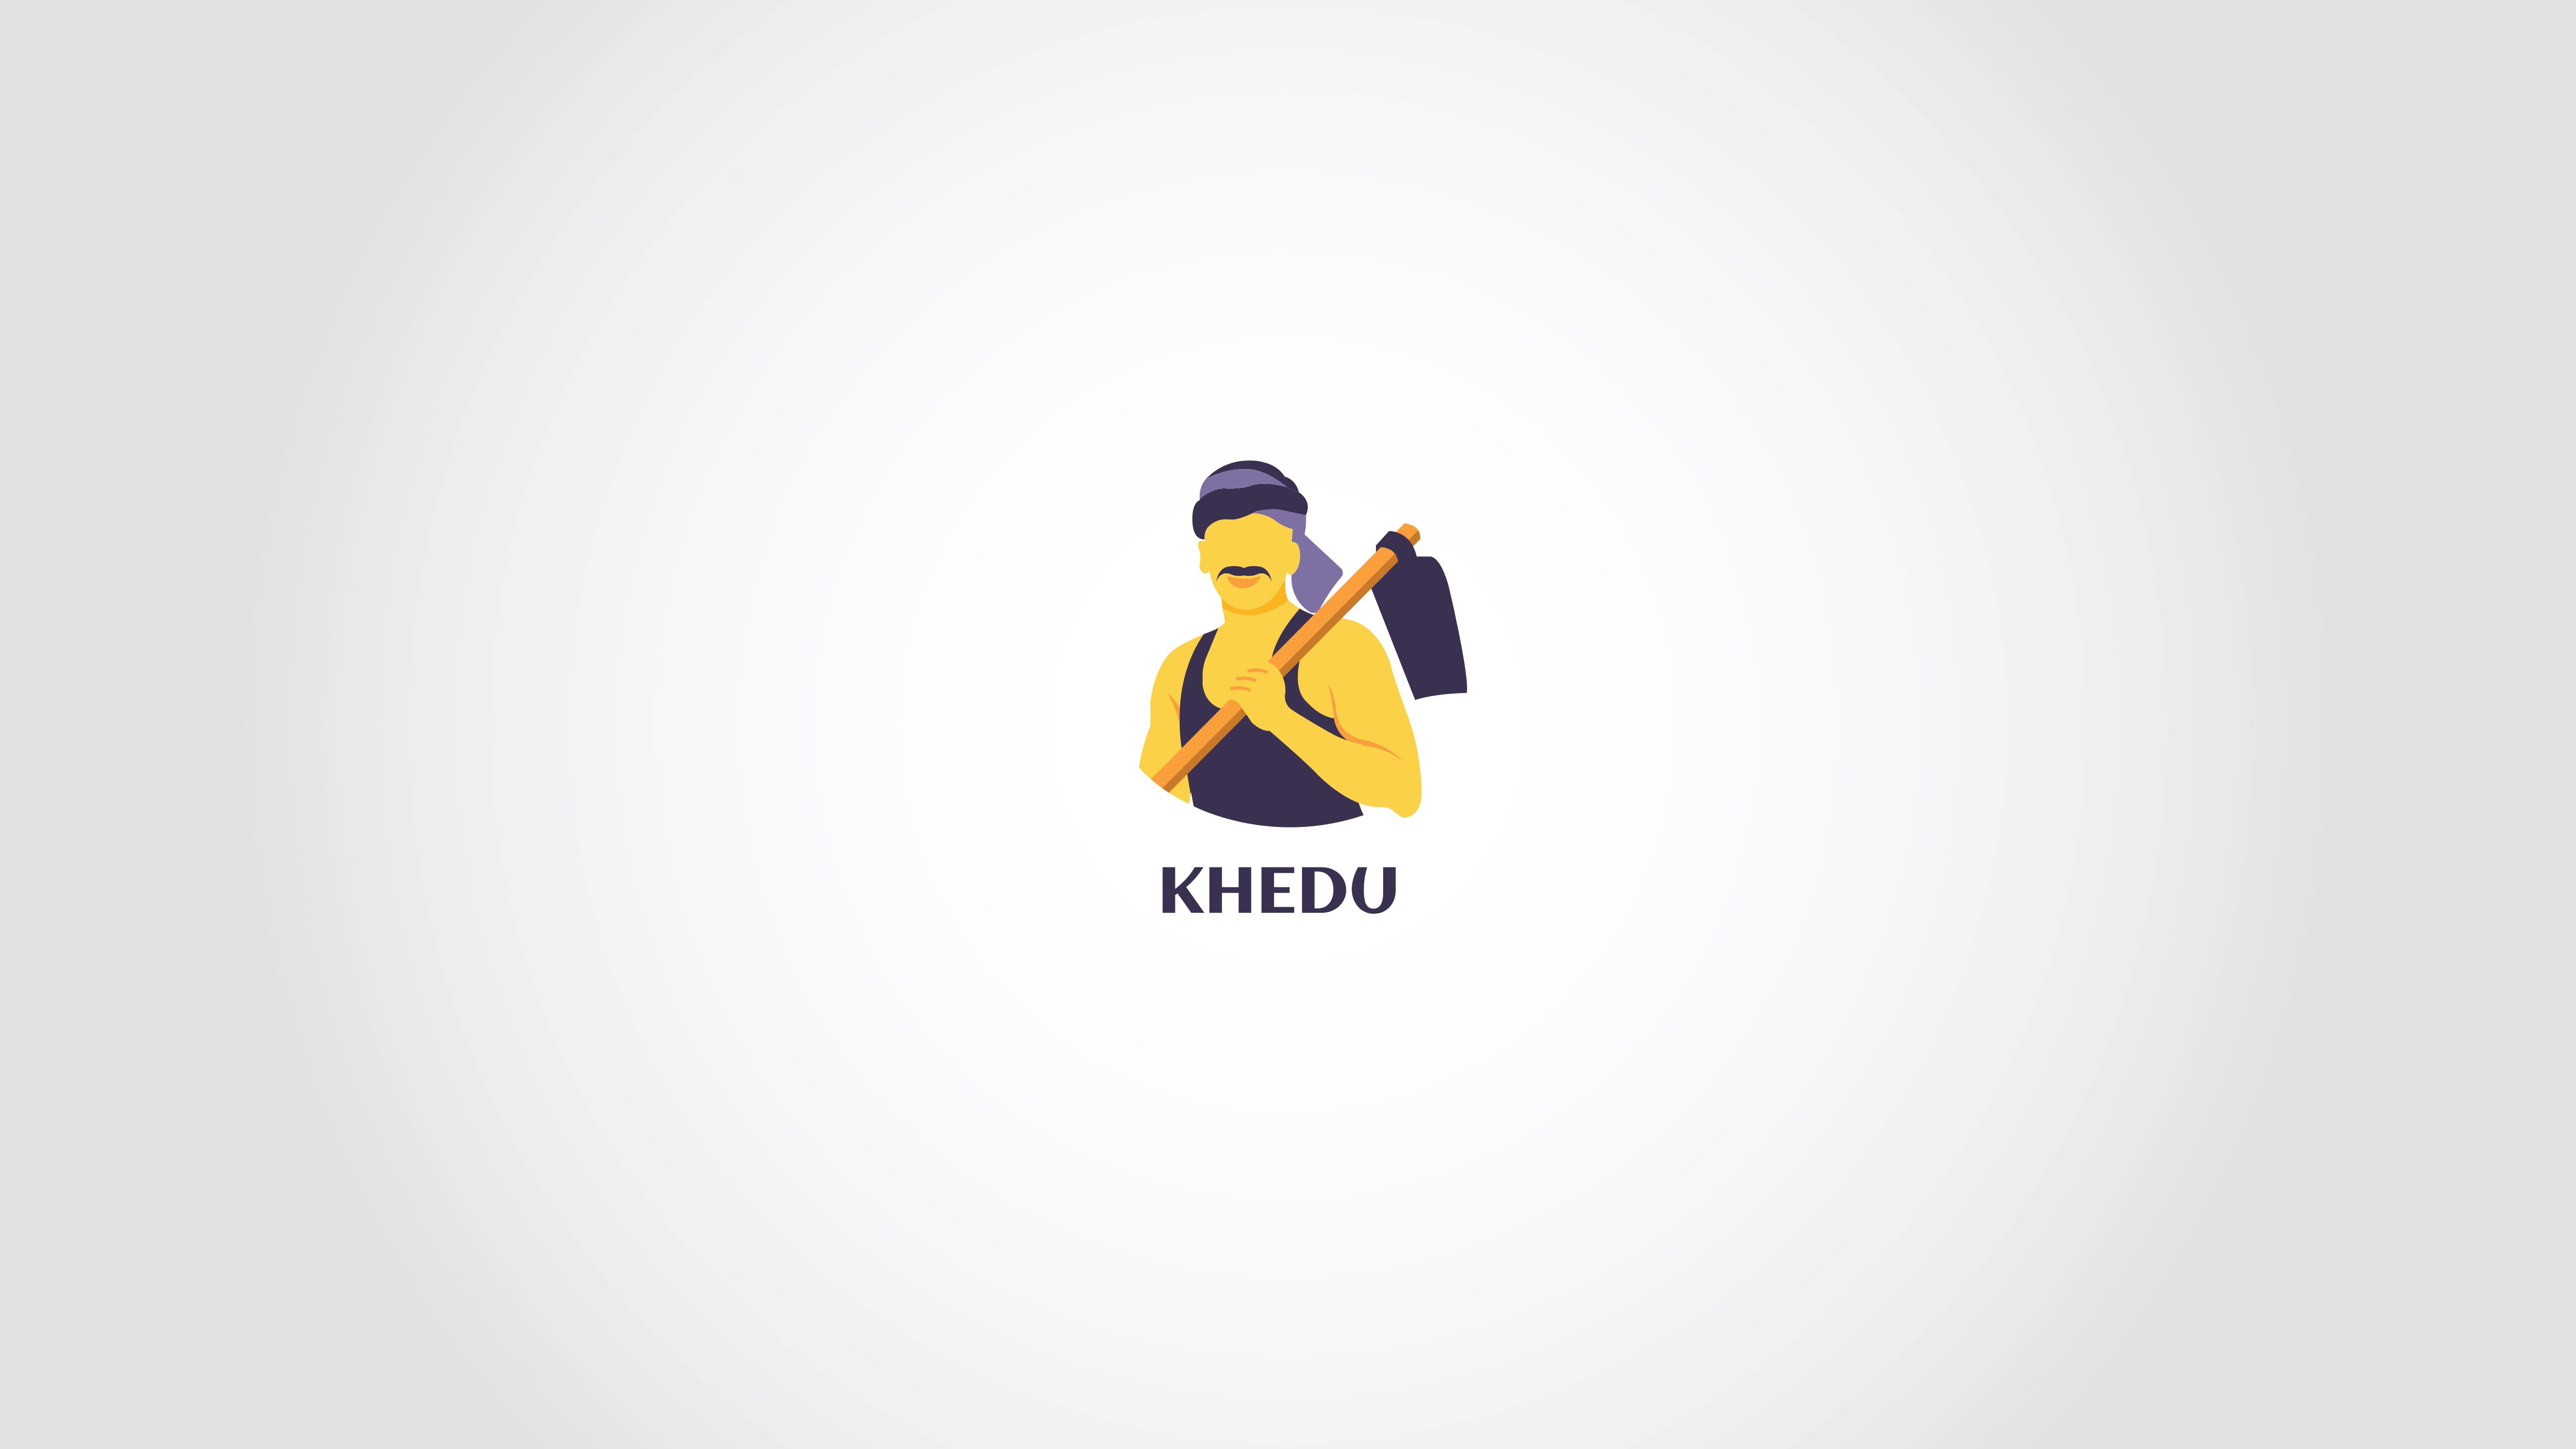 Khedu